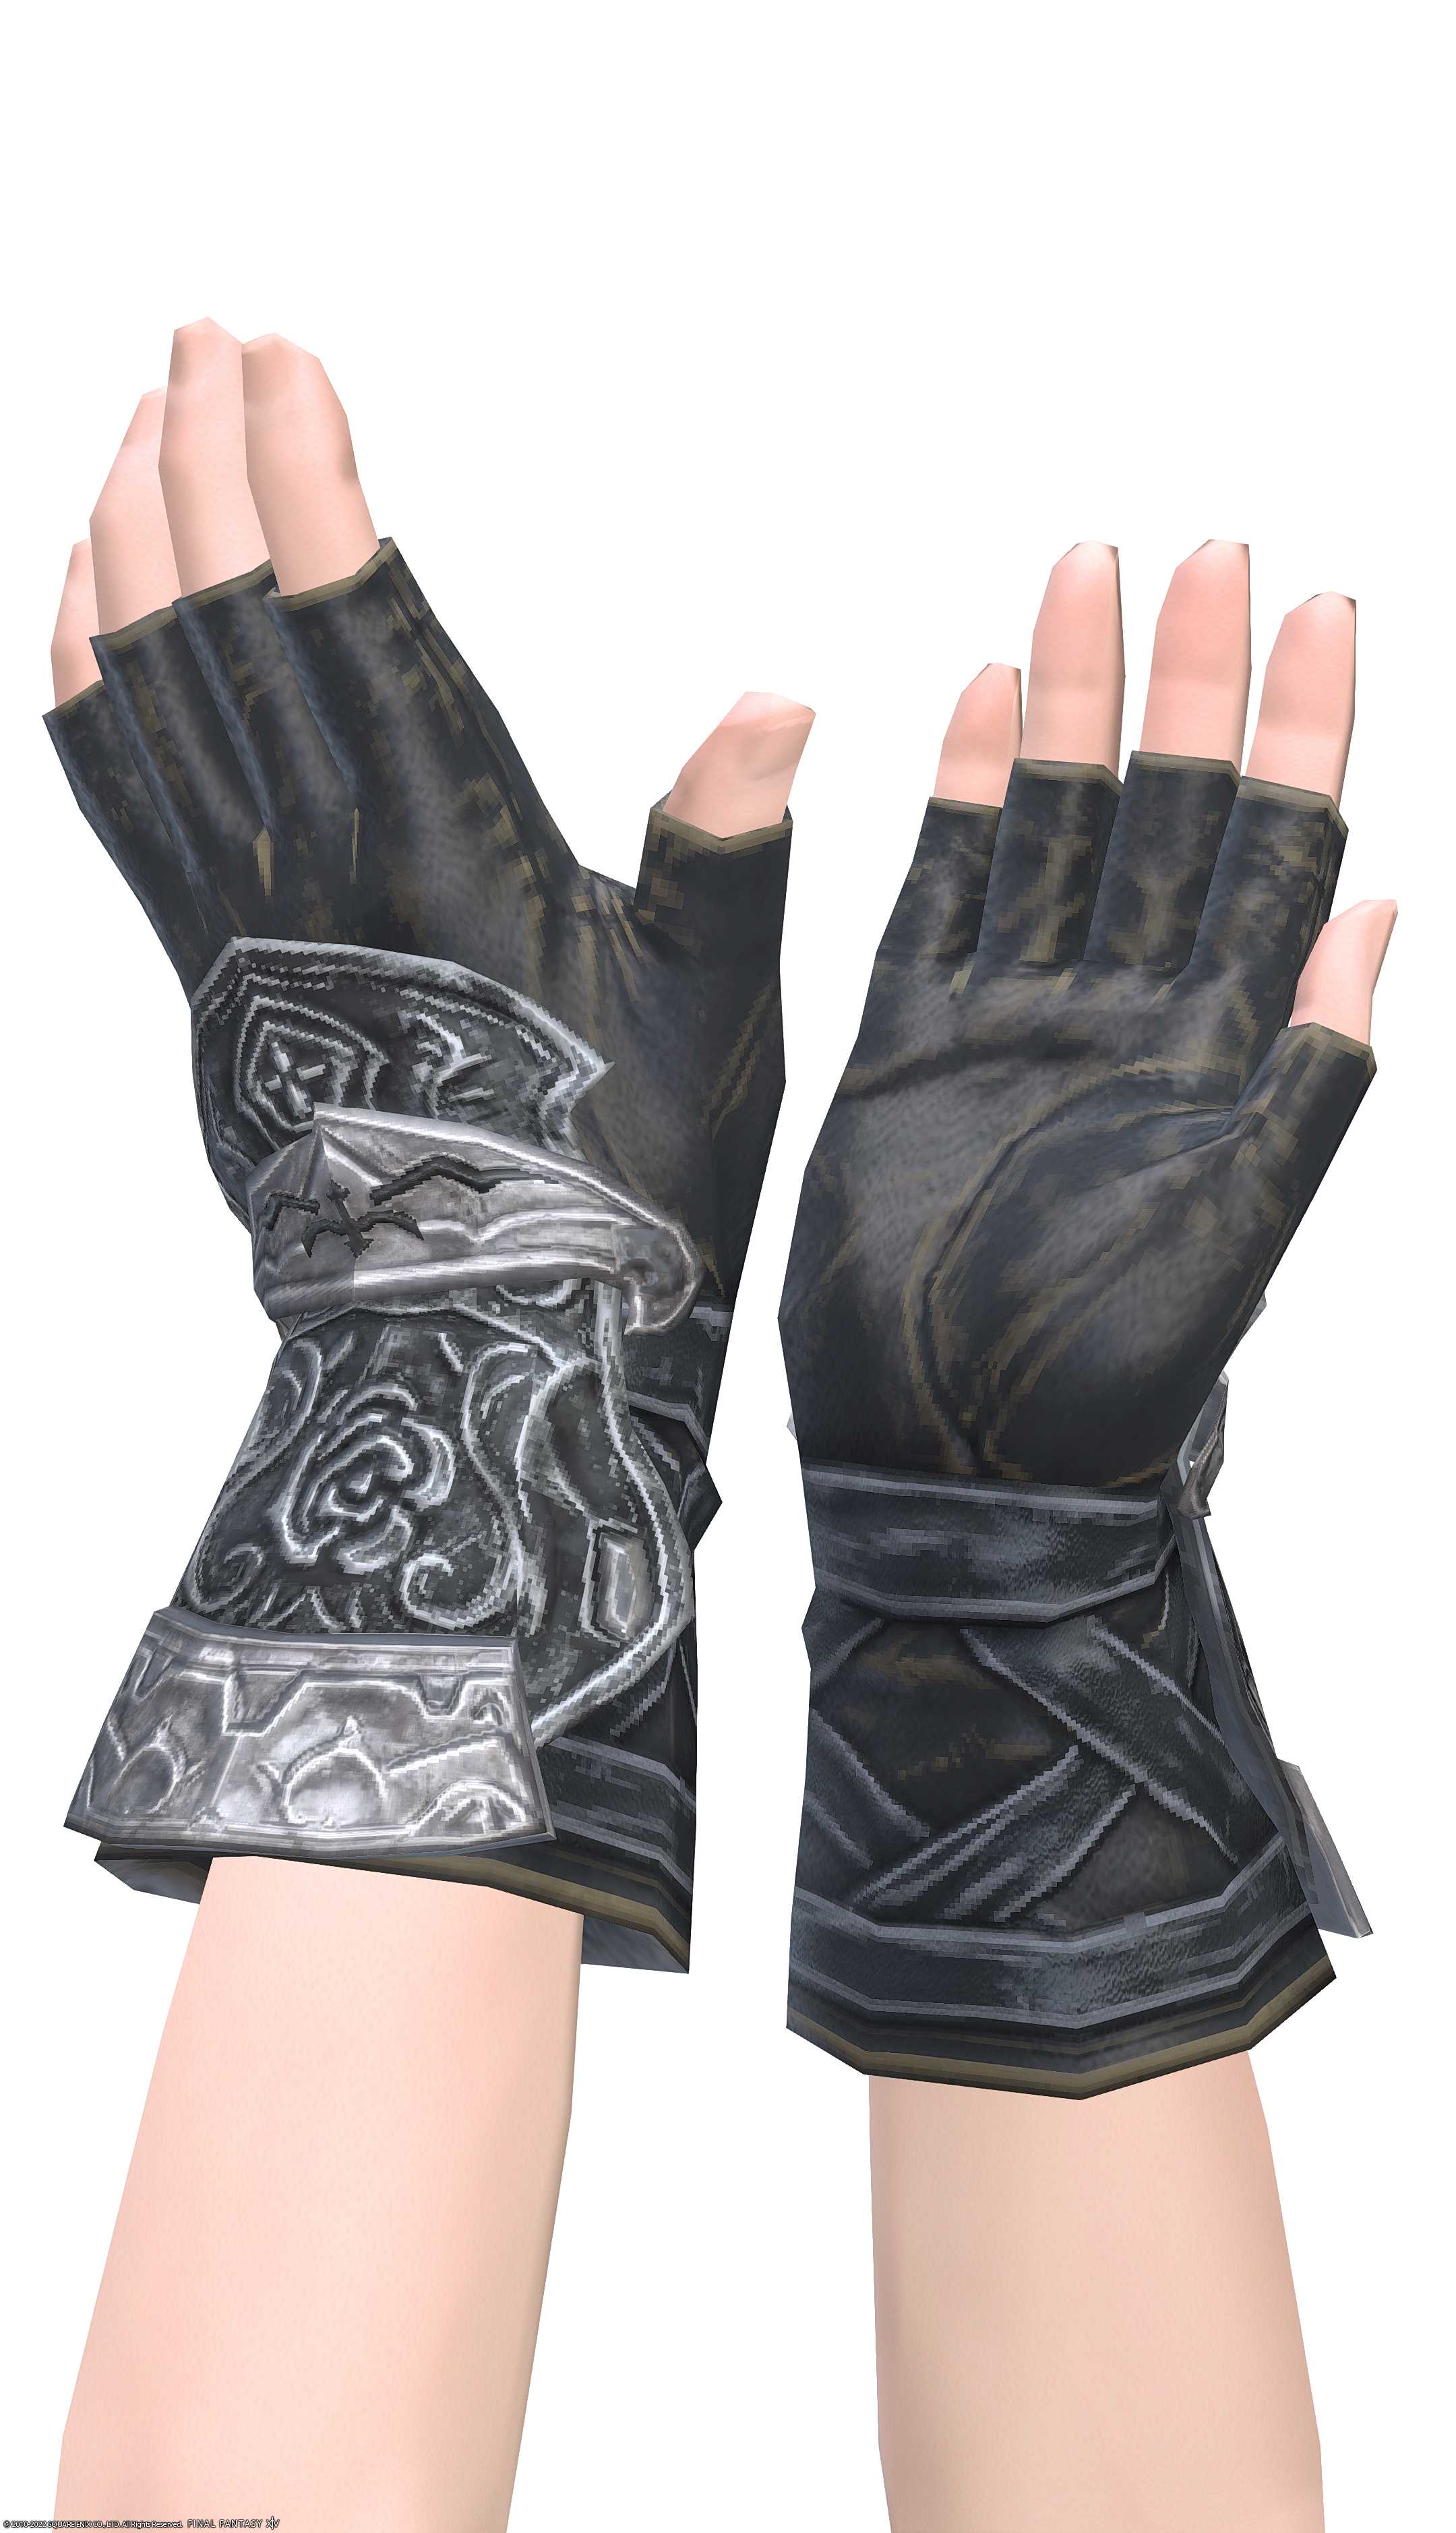 エデンモーン・スカウトフィンガレスグローブ | FF14ミラプリ - Edenmorn Fingerless Gloves of Scouting - 篭手/手袋/フィンガレス